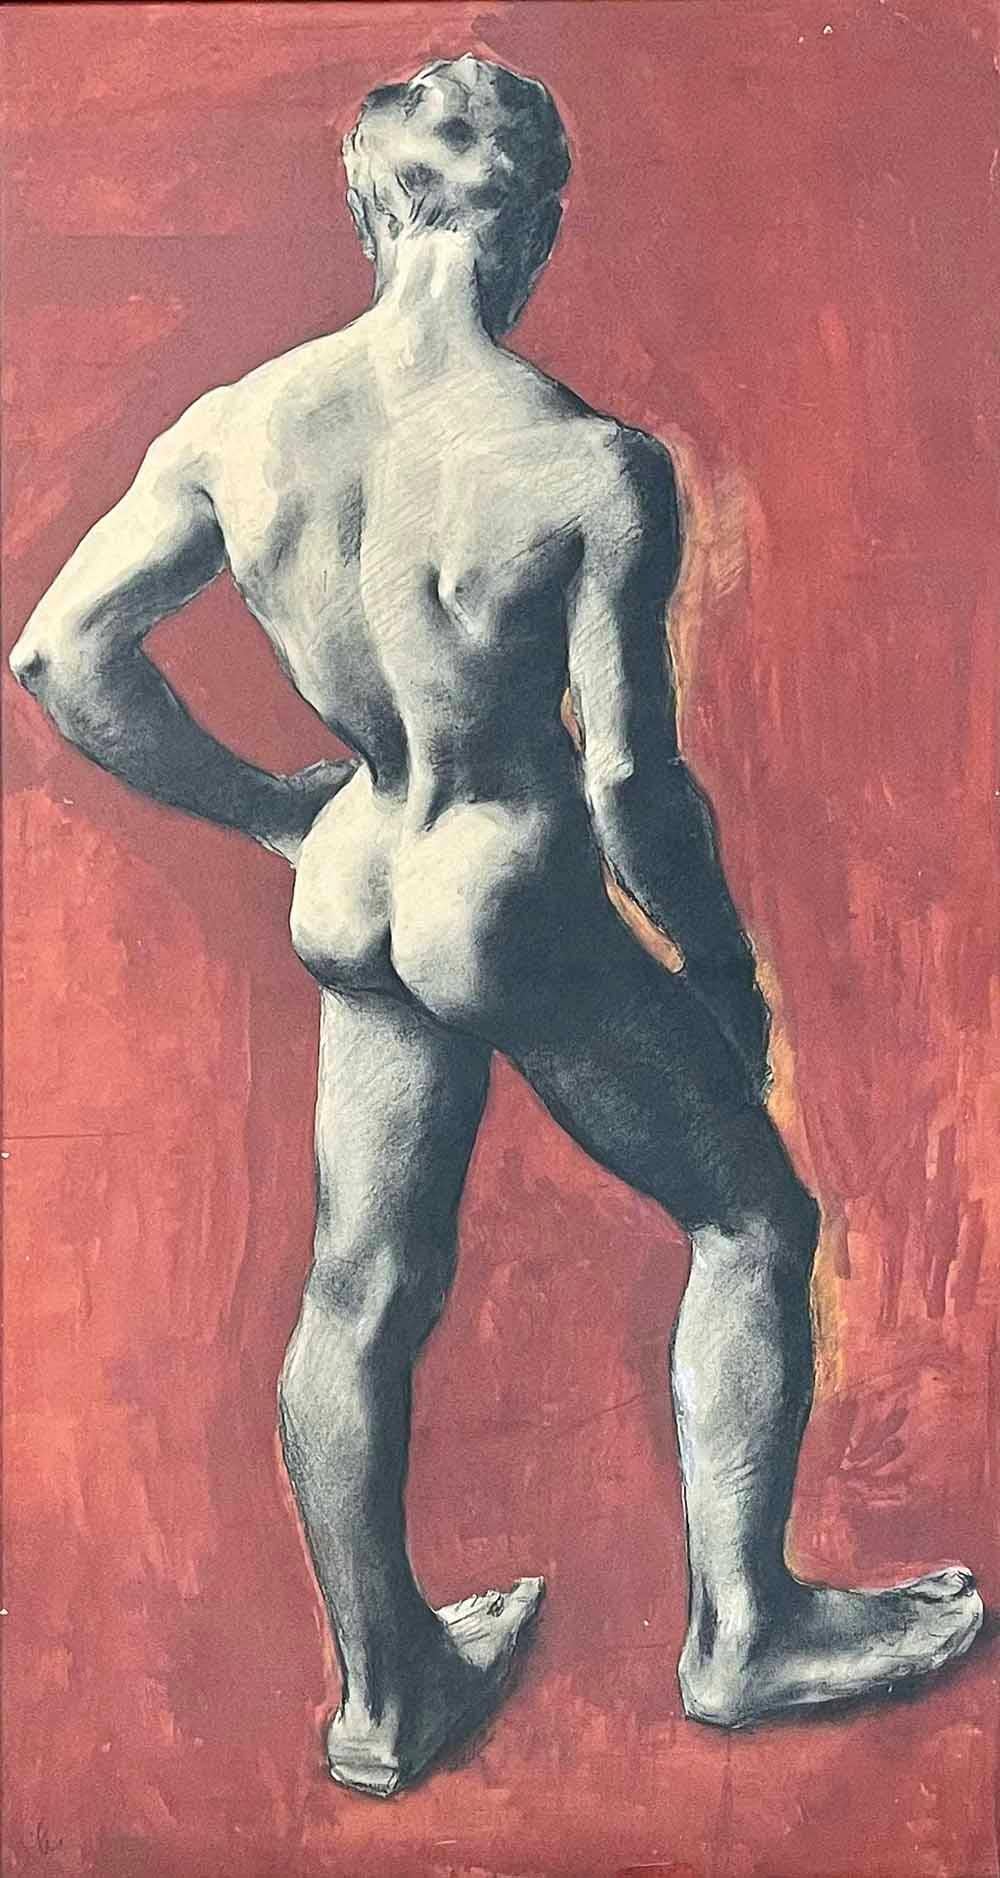 Dieses großformatige Gemälde aus den 1950er Jahren, das einen nackten männlichen Jugendlichen in schwarzer Gouache oder Kohle auf einem satten, tiefroten Grund darstellt, ist ein Werk von Christopher Clark.  Der Künstler ist vor allem für seine